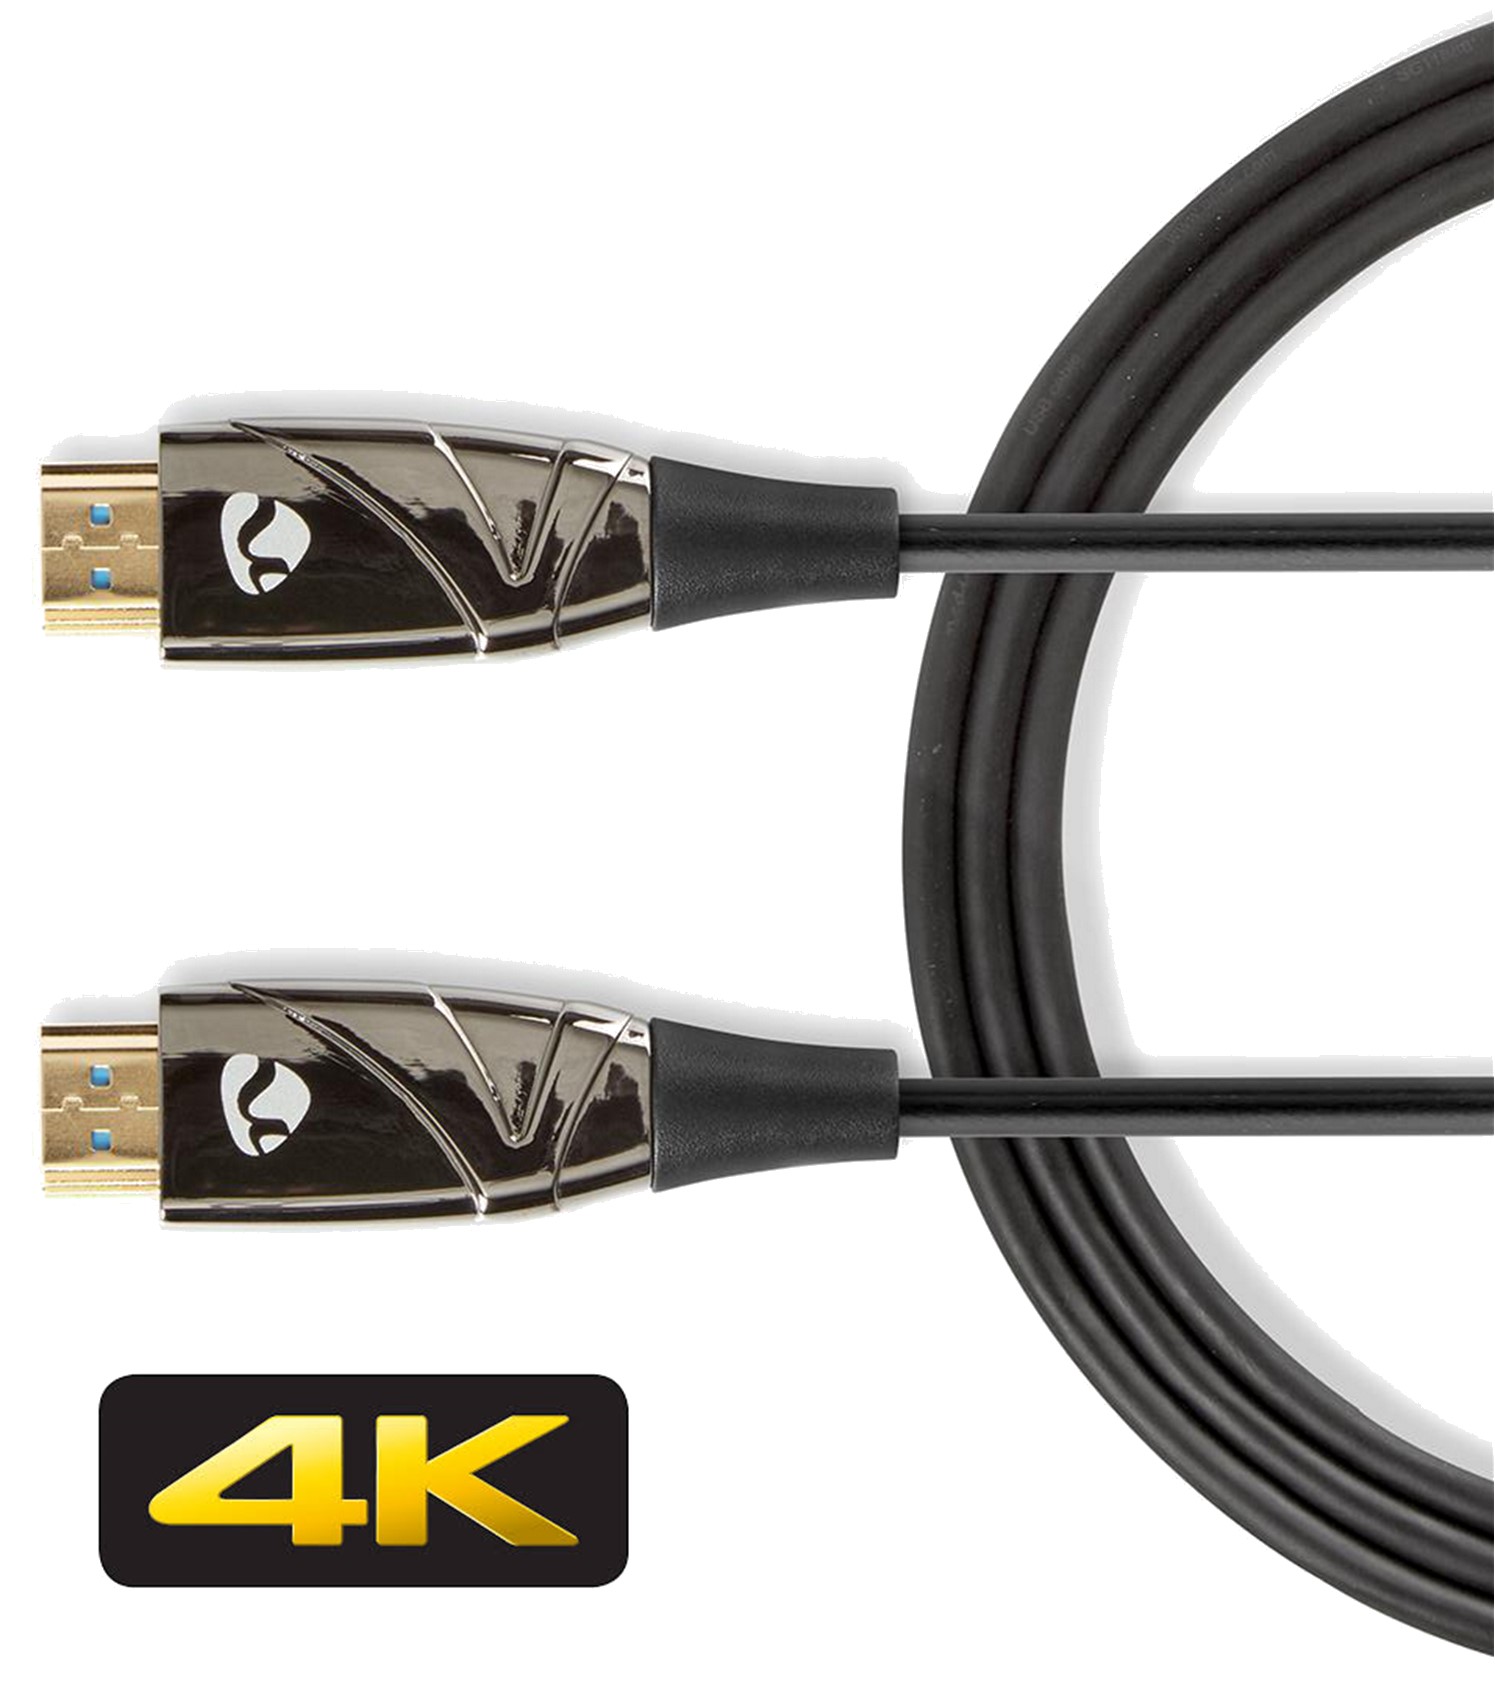 Tact Vervolg Clip vlinder 4K HDMI > HDMI Optische kabel 15m zwart max. 4K/60Hz – R.F. Systems